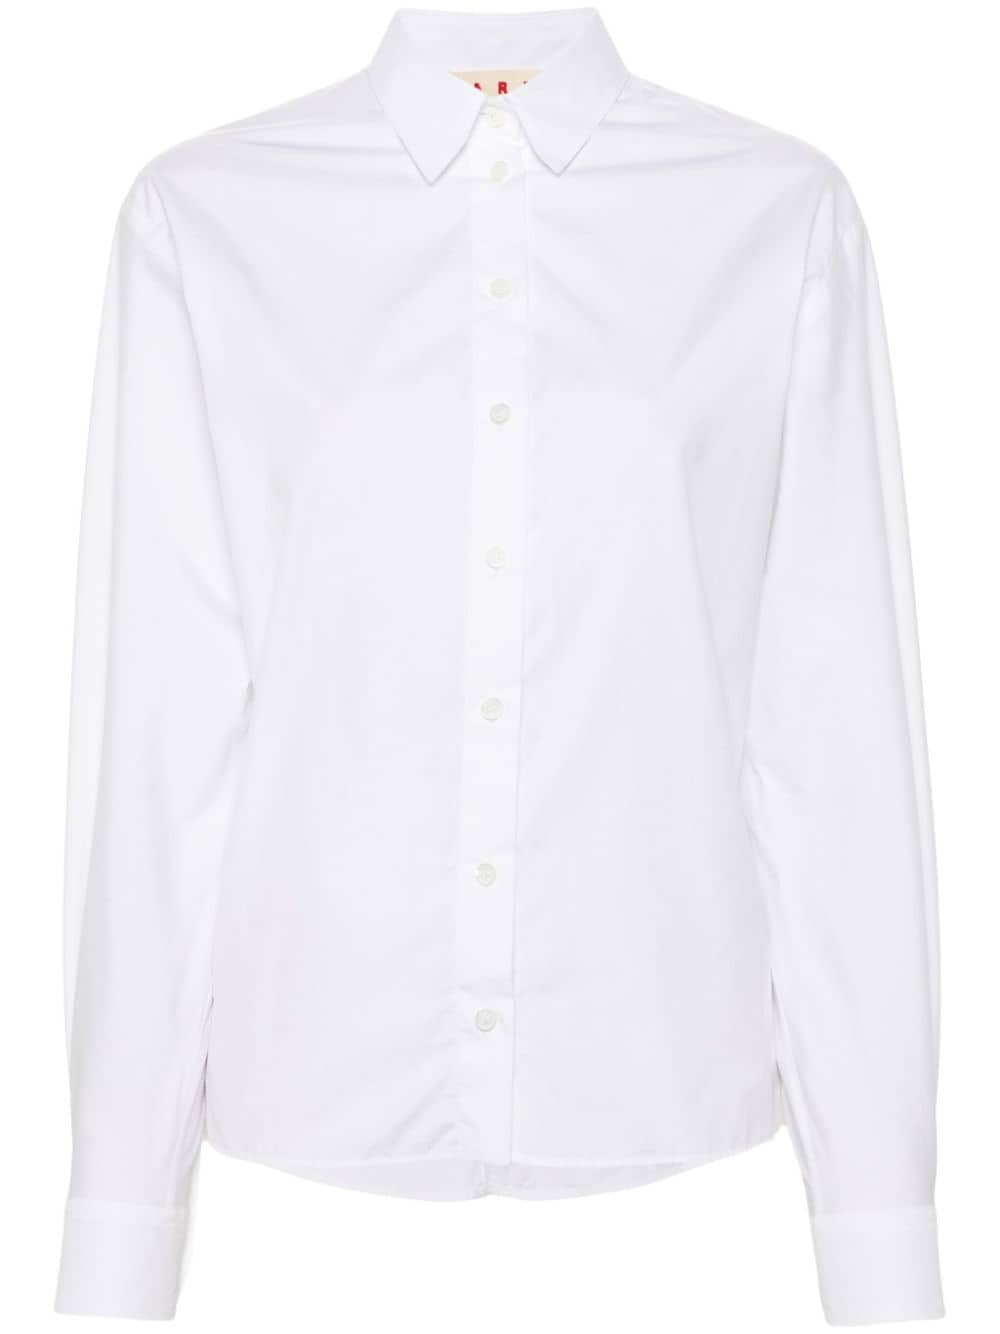 Marni plain cotton shirt - White von Marni